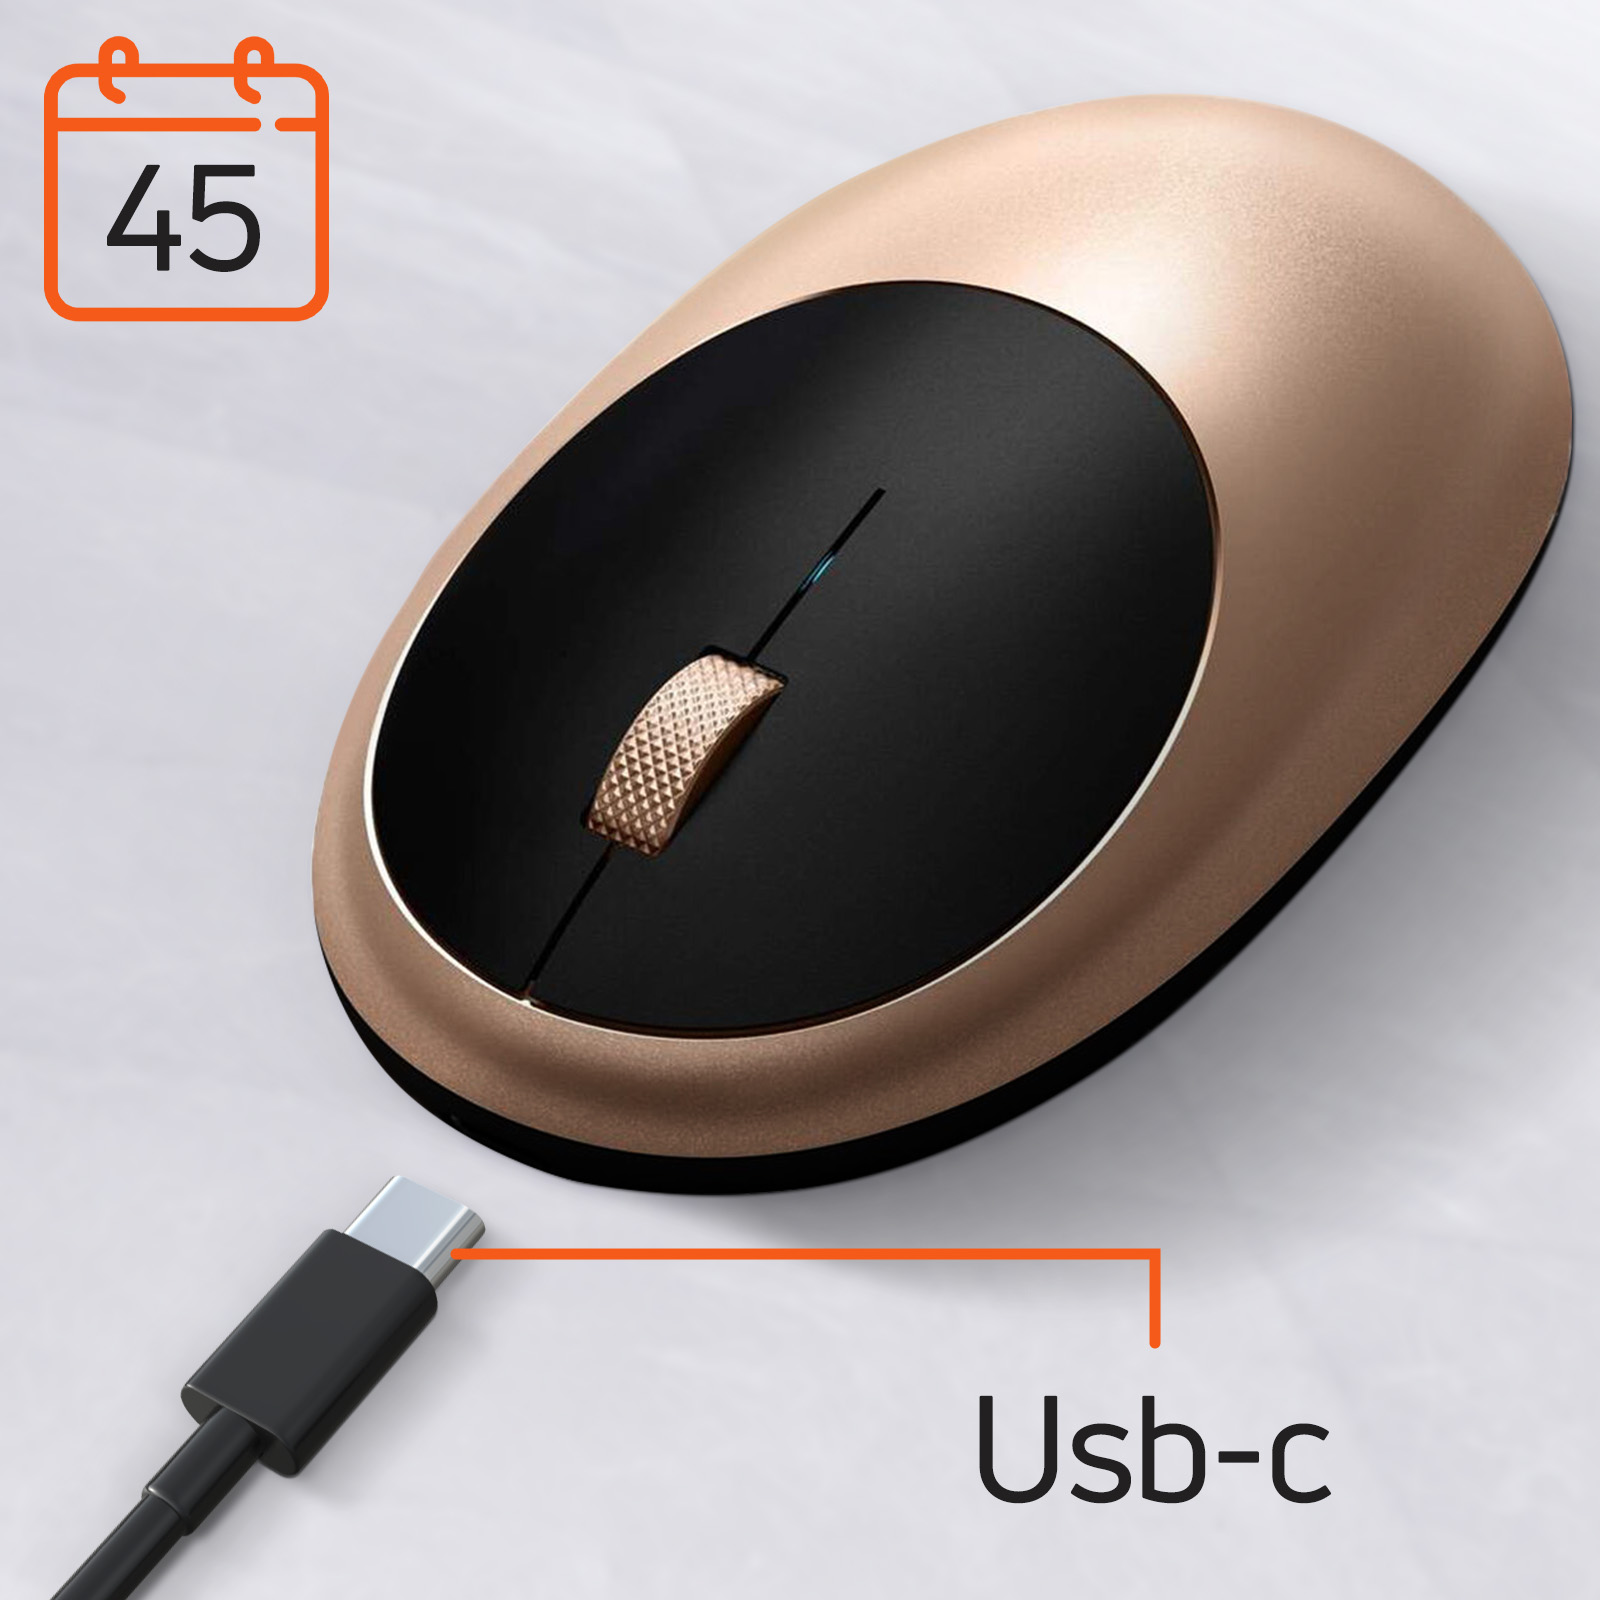 Mouse Bluetooth per MacBook e iMac ricaricabile USB-C, Satechi M1 - azzurro  - Italiano